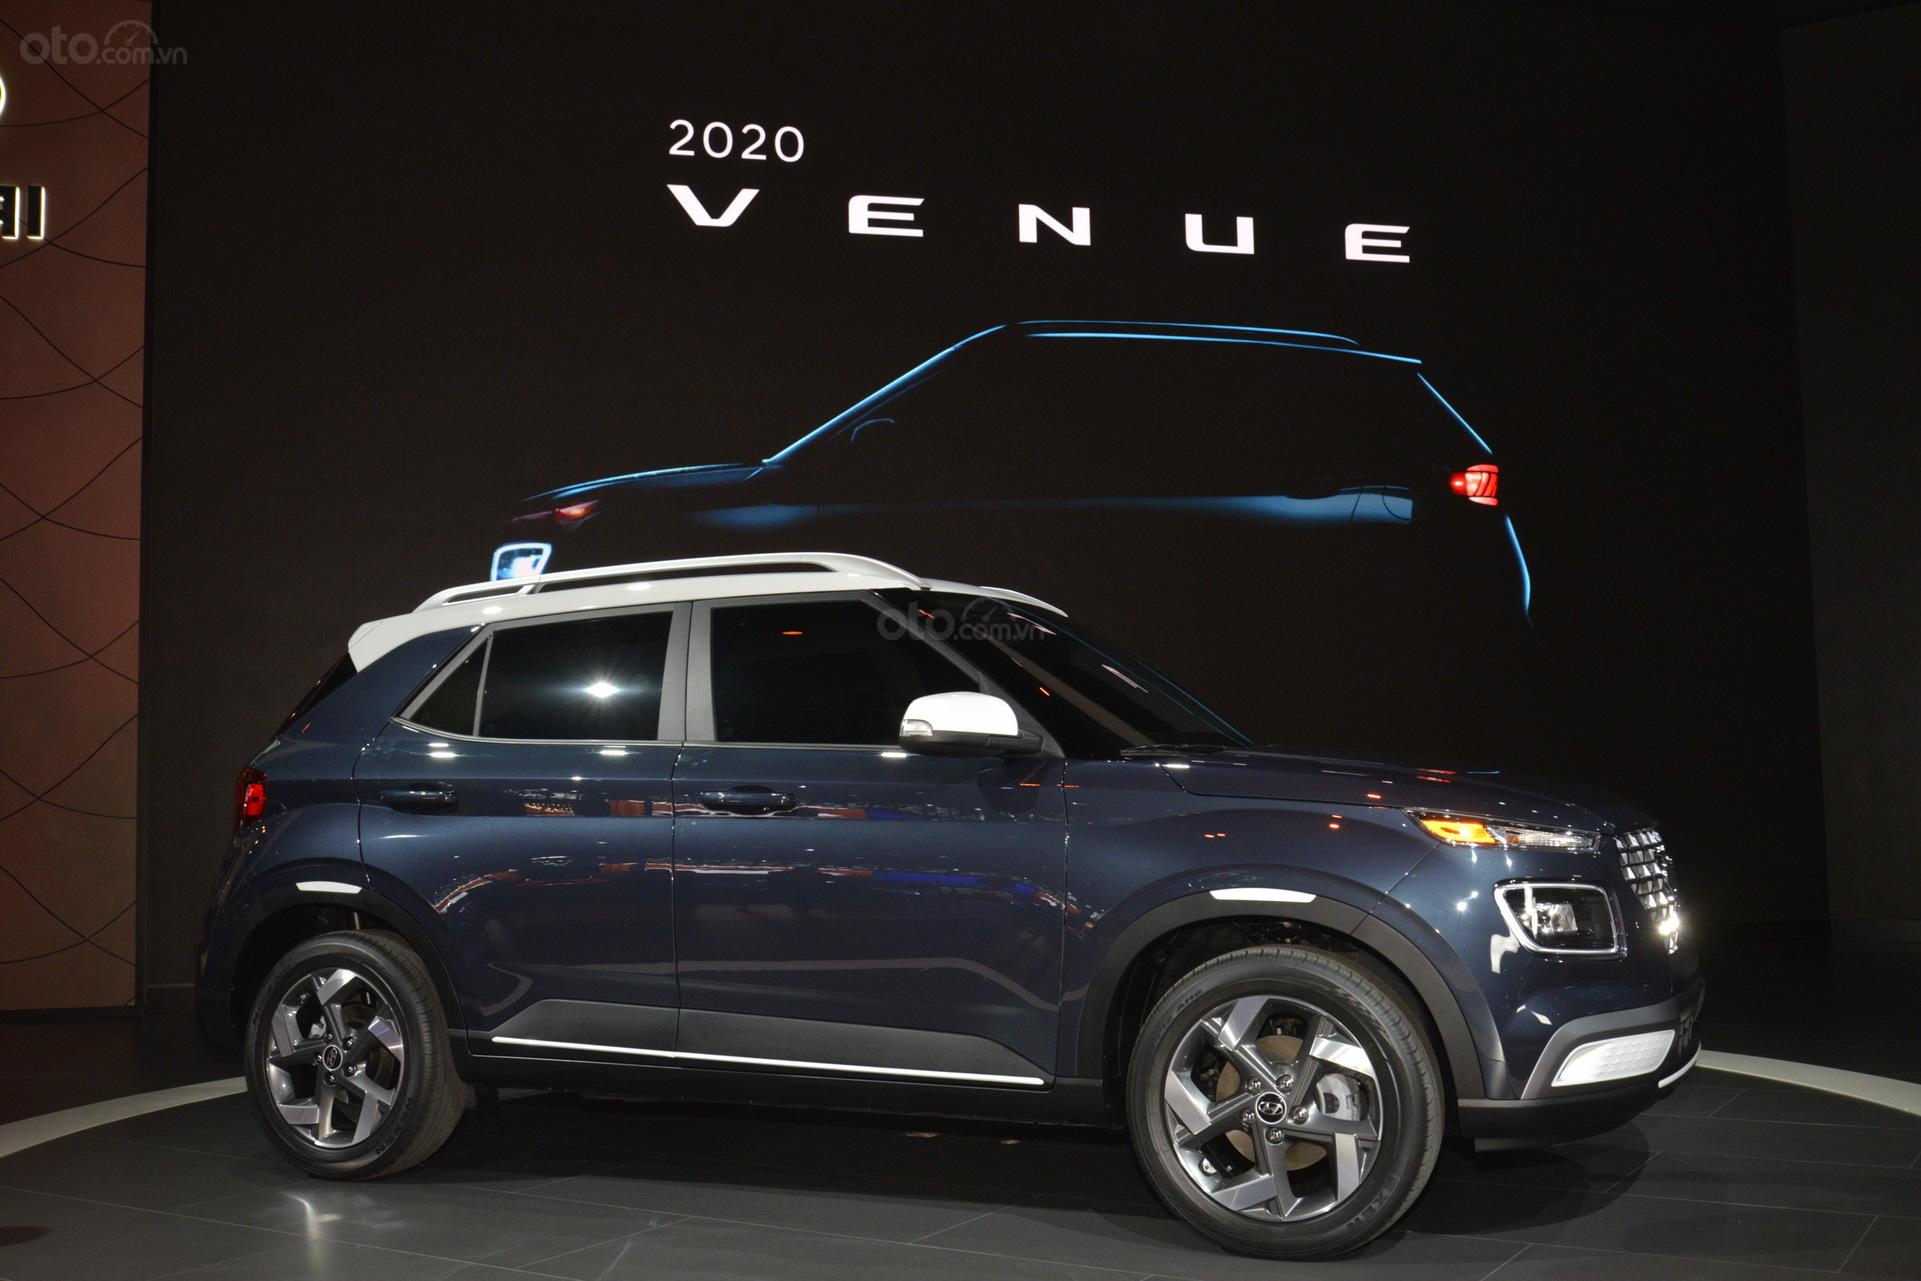 Đánh giá Hyundai Venue 2020 - góc thân xe